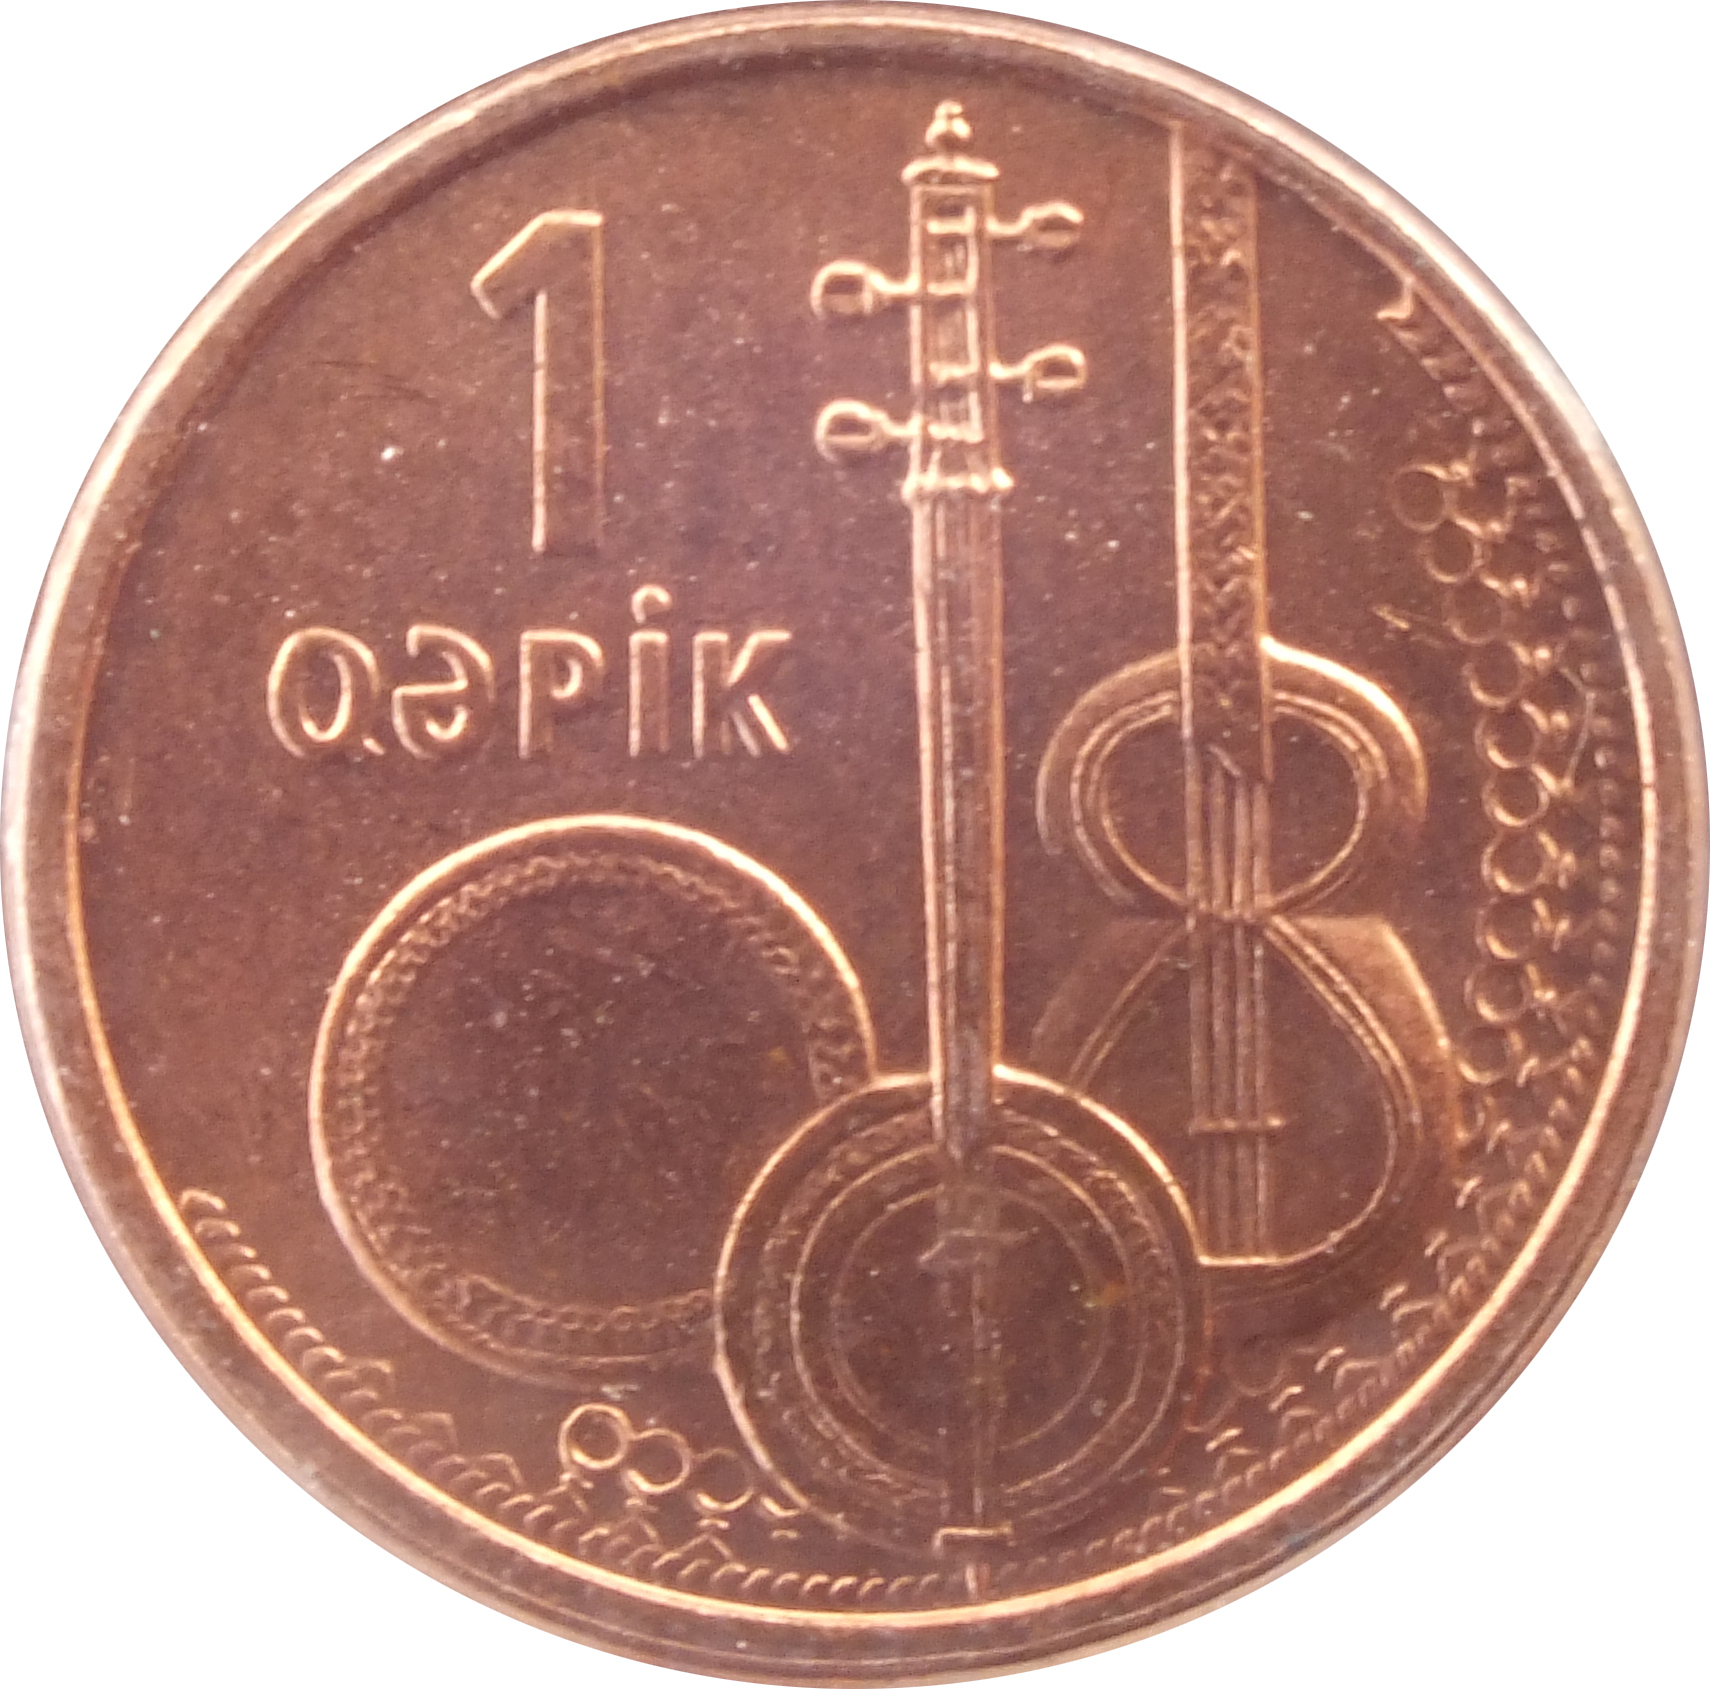 Азербайджанская денежная единица. Азербайджан 1 гяпик 2006. Азербайджан валюта копейки. Азербайджанский манат монеты. Валюта Азербайджана монеты.